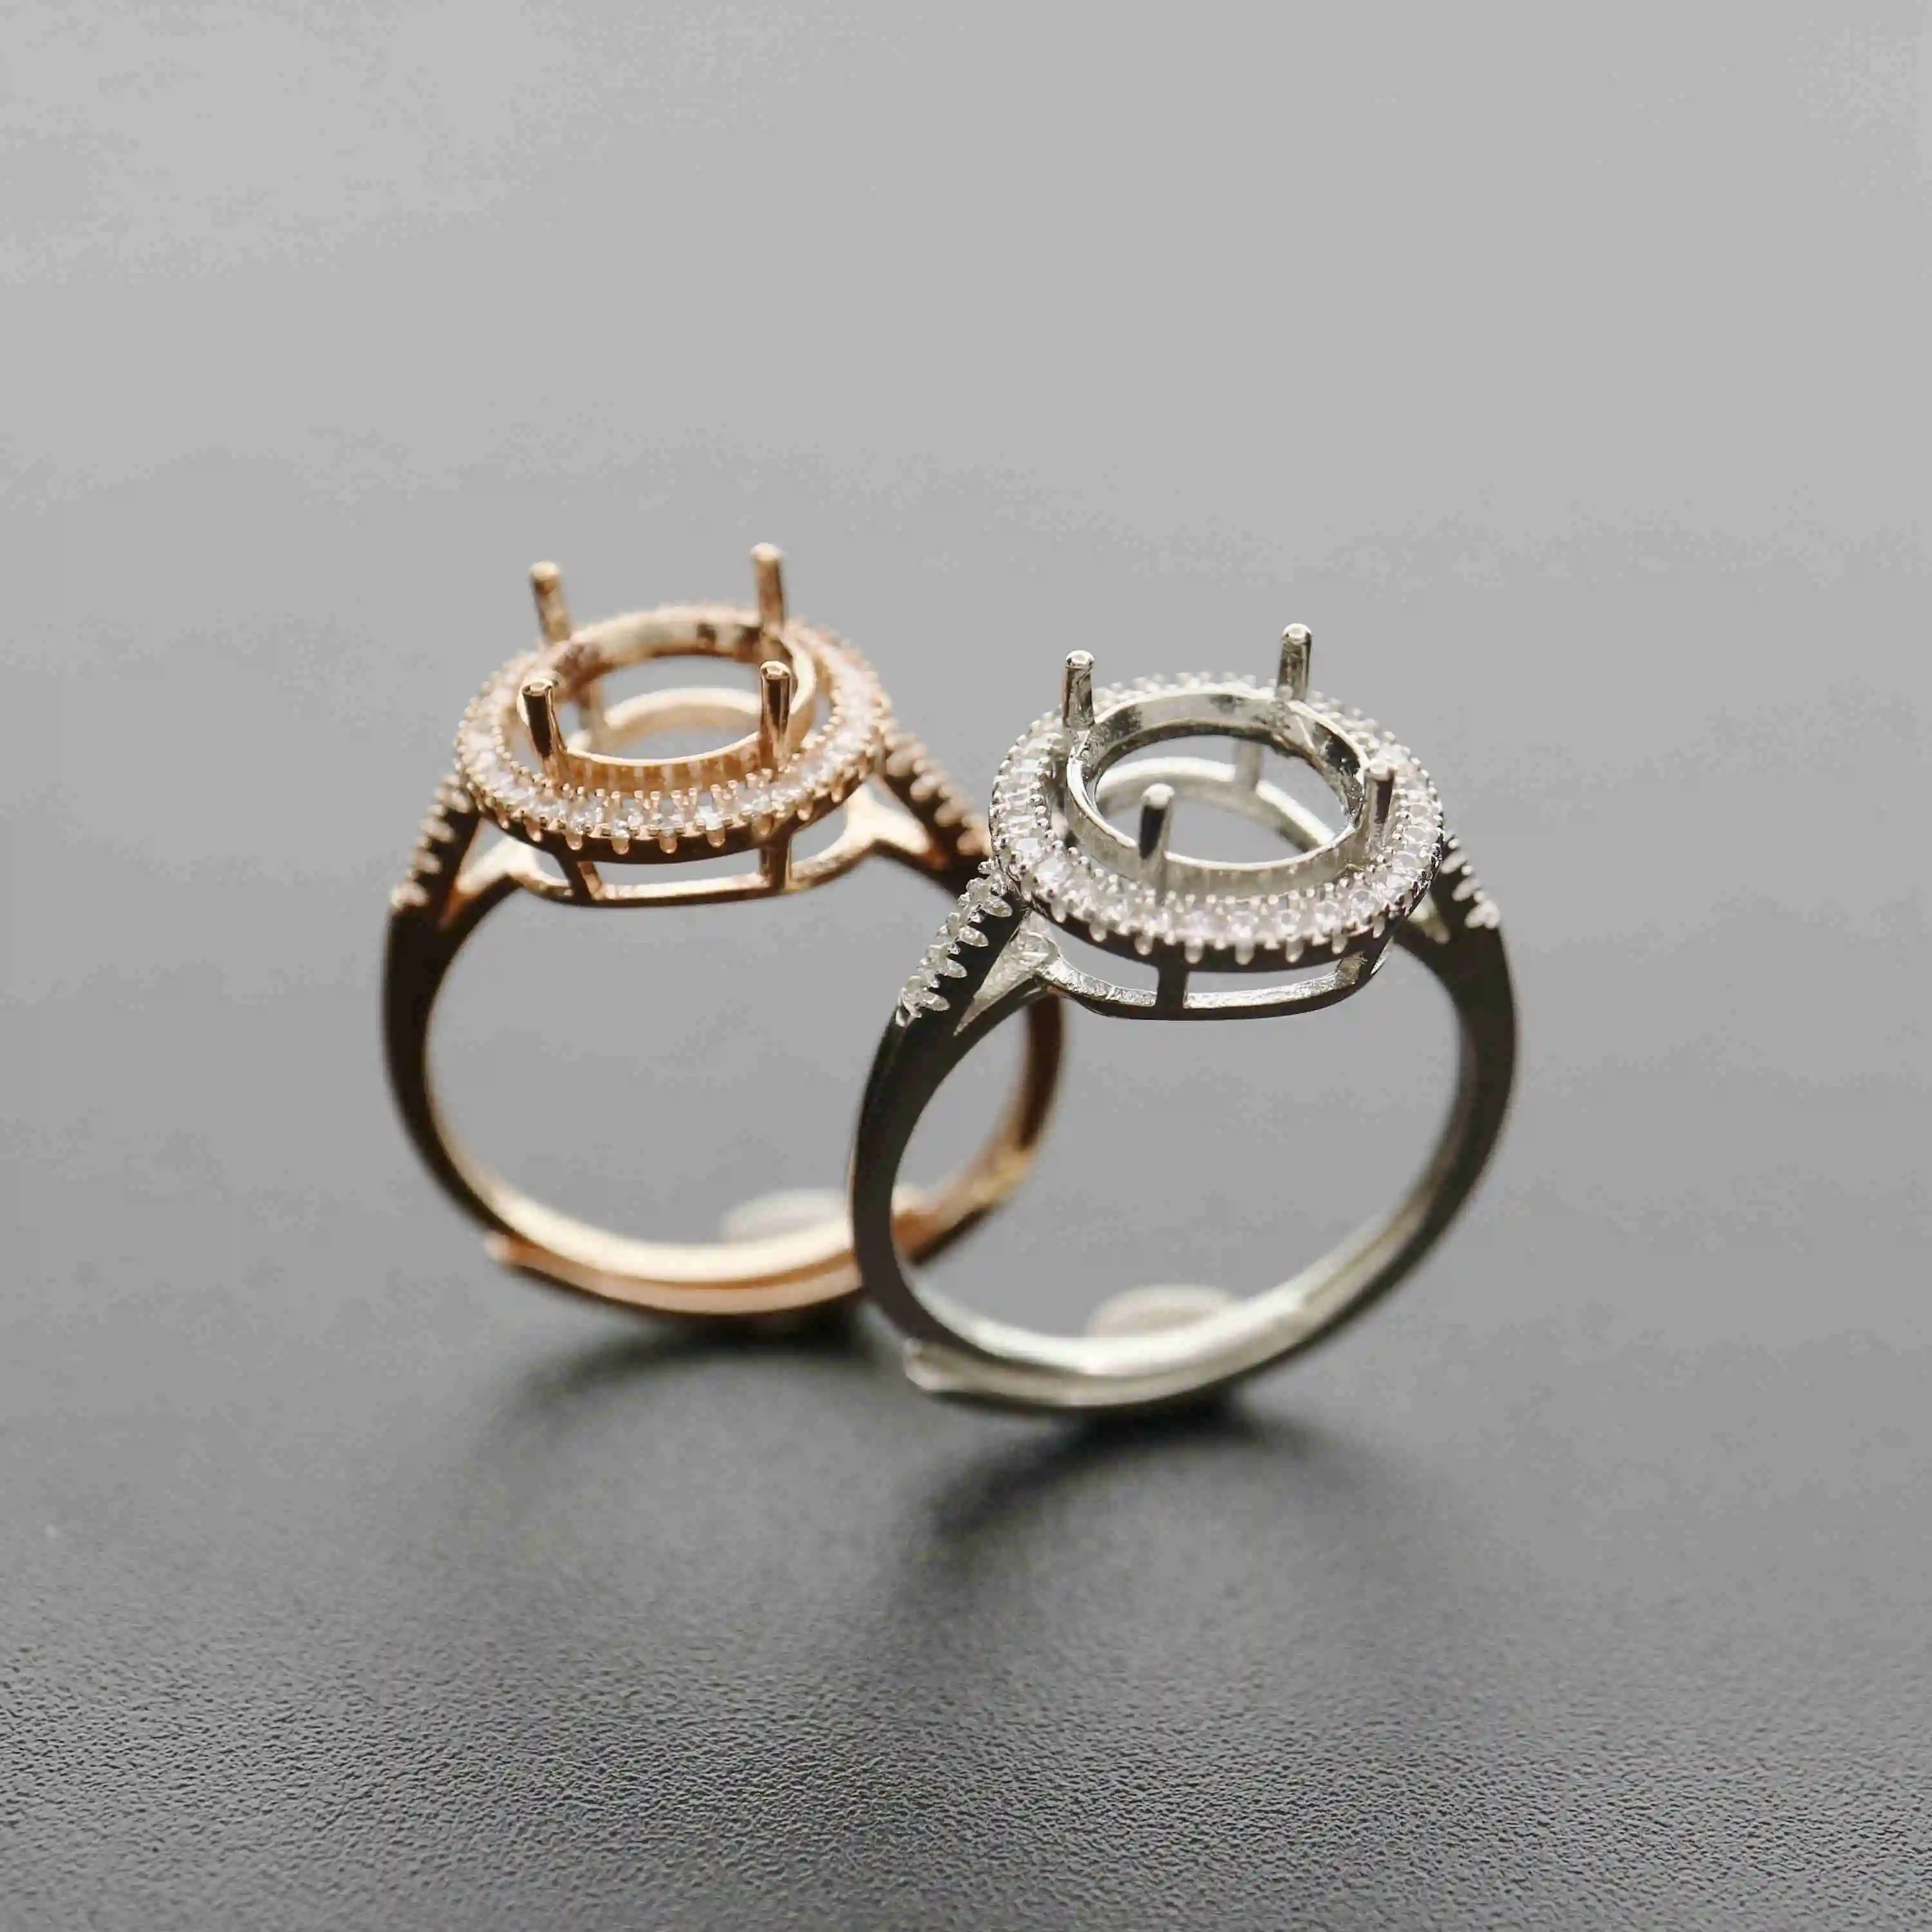 6-10MM ronda de oro rosa de plata Joyas CZ piedra puntas bisel sólida plata de ley 925 anillo ajustable configuración 1210031 1